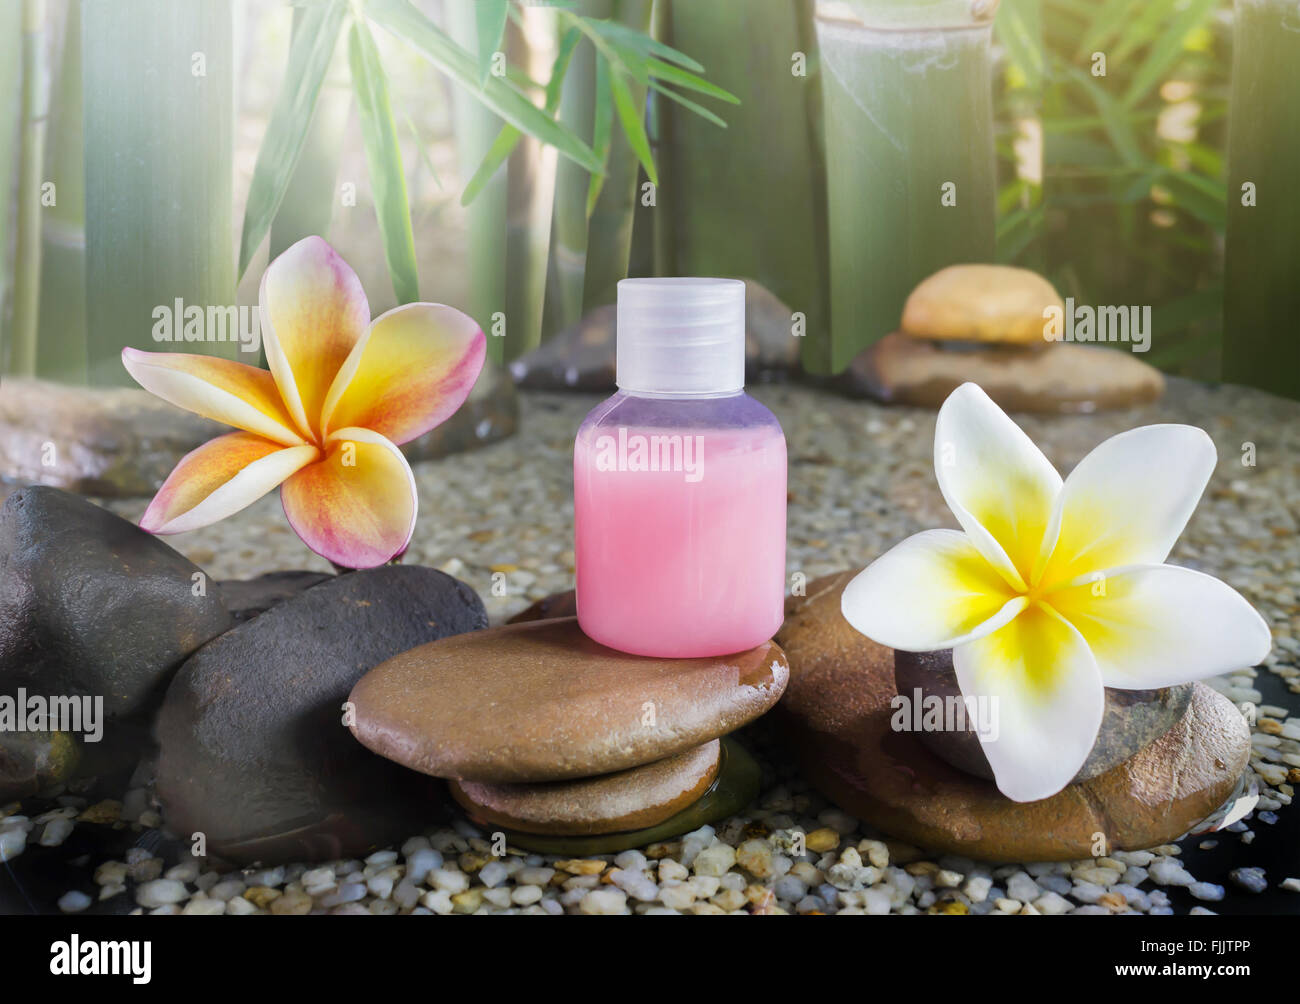 Bain moussant et gel douche liquide avec des fleurs sur bambou vert arbre et sentiment de détente nature background Banque D'Images